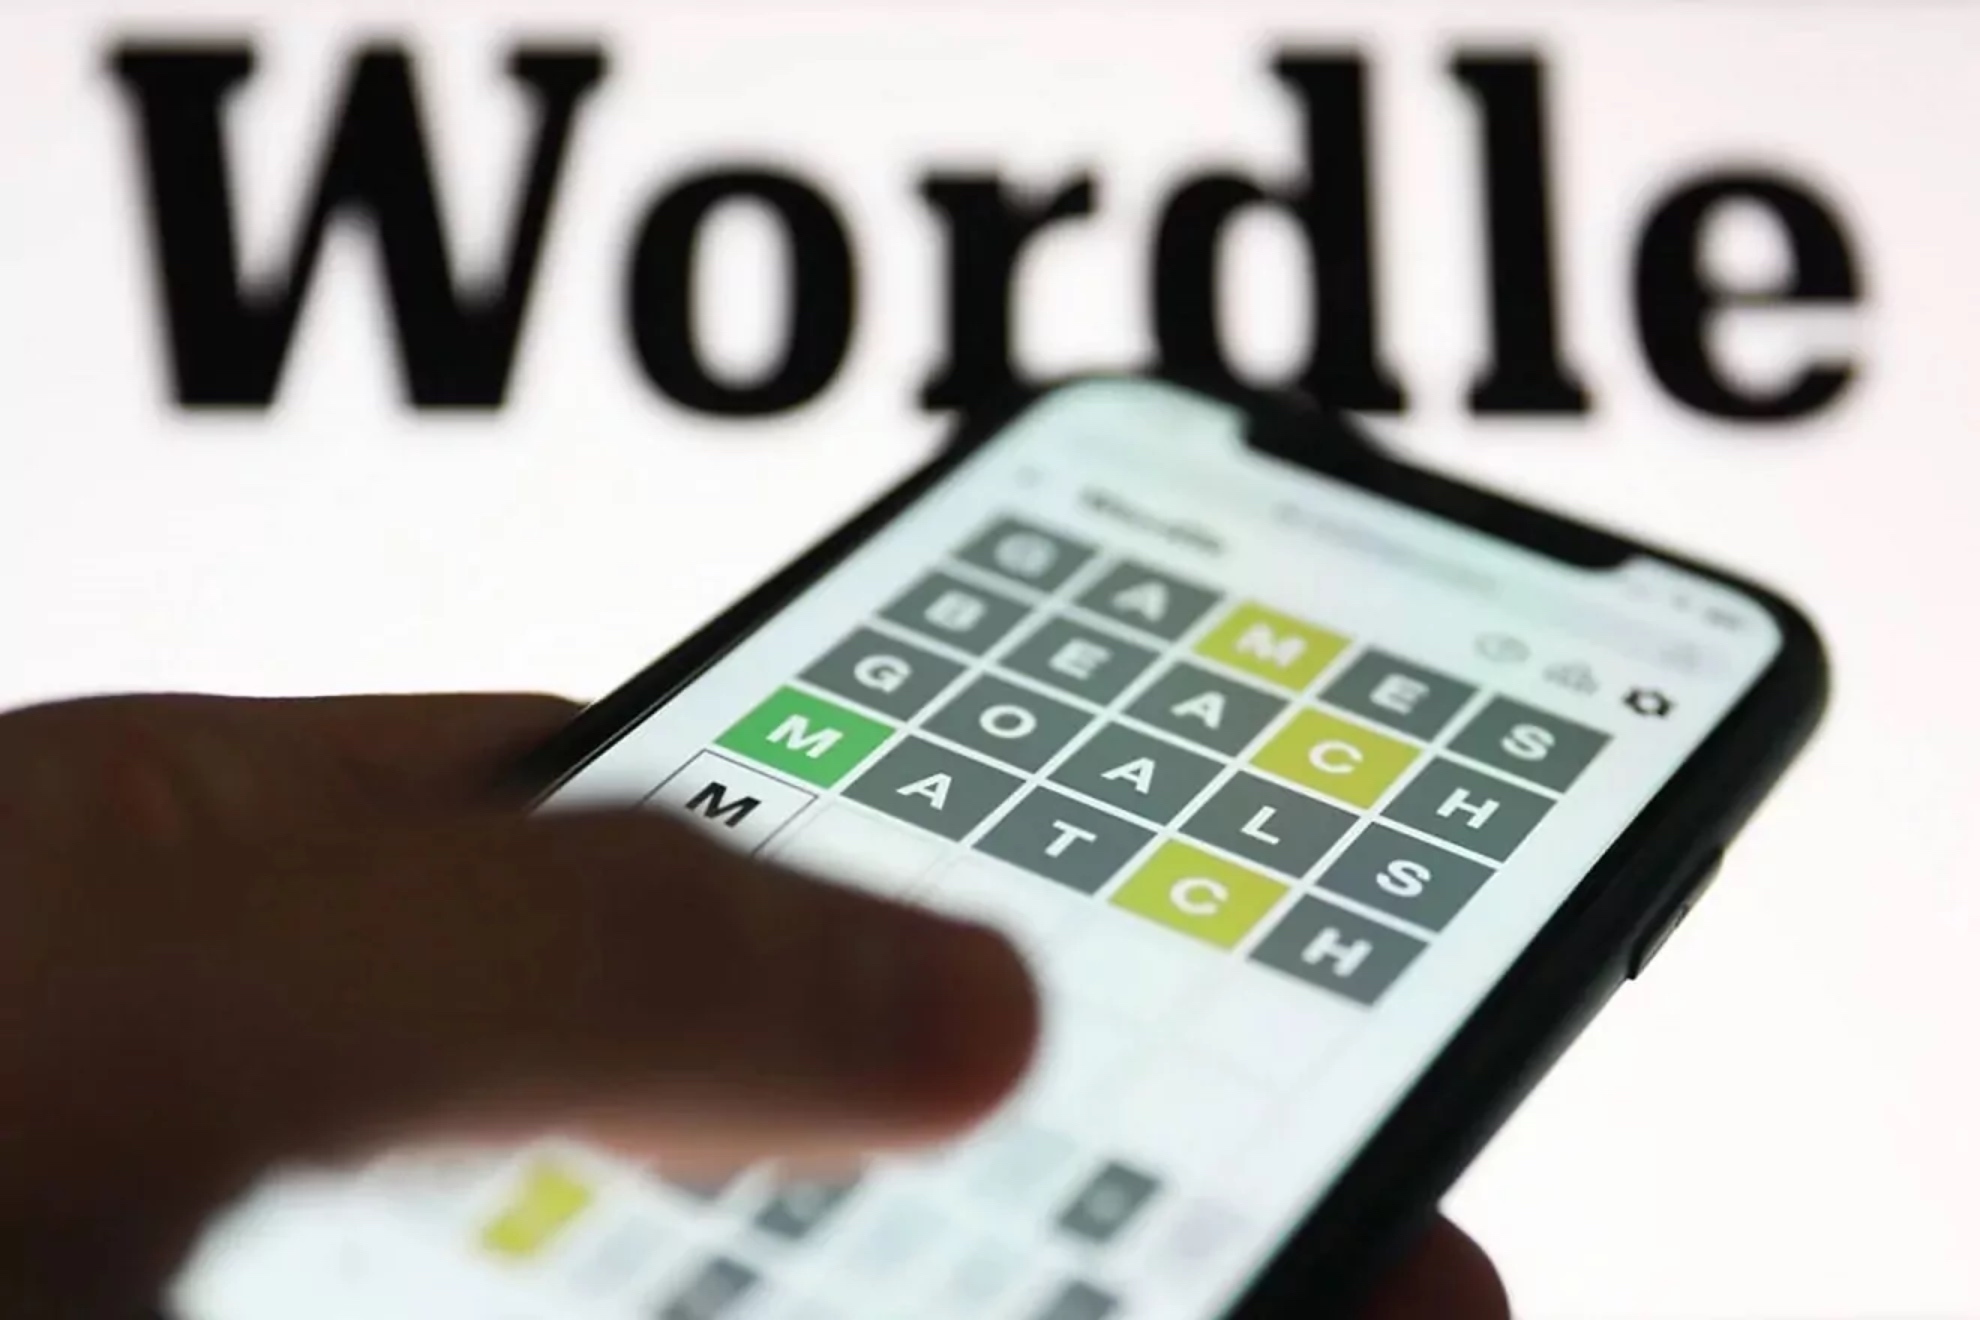 Wordle espaol hoy, 15 de abril: normal, tildes y cientfico | Soluciones y pistas para adivinar la palabra